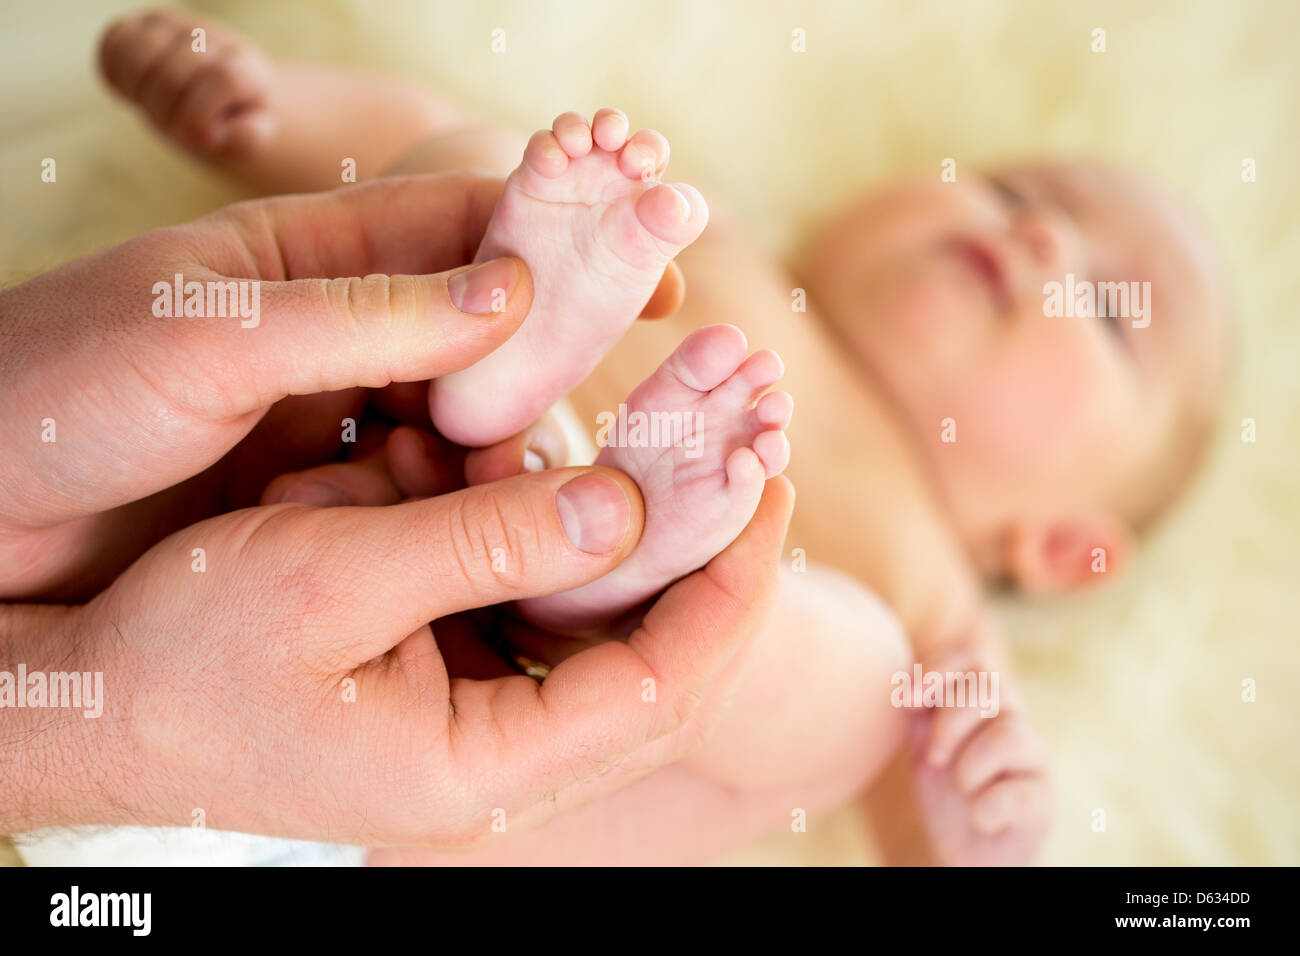 Vater oder Arzt kleine Babys Fuß massieren Stockfoto